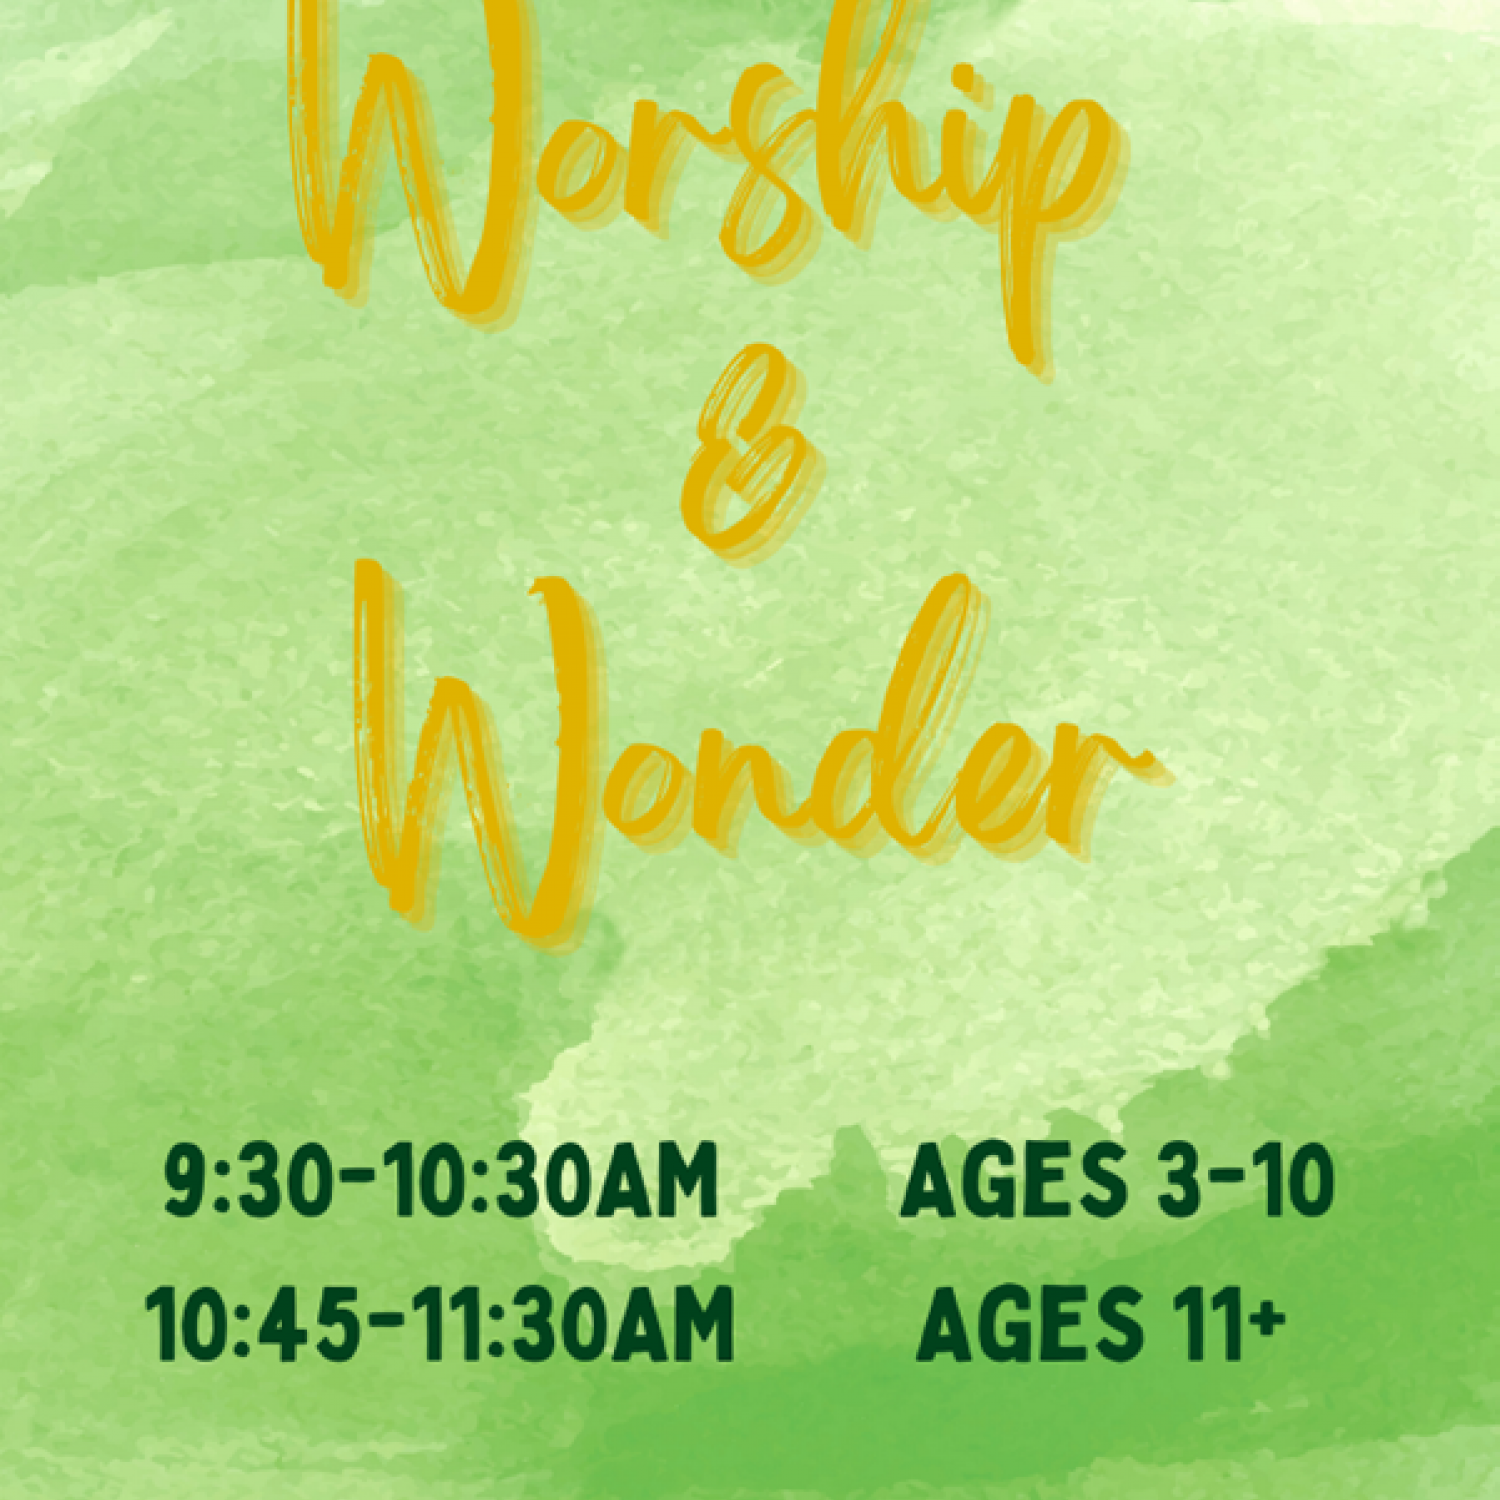 Worship & Wonder